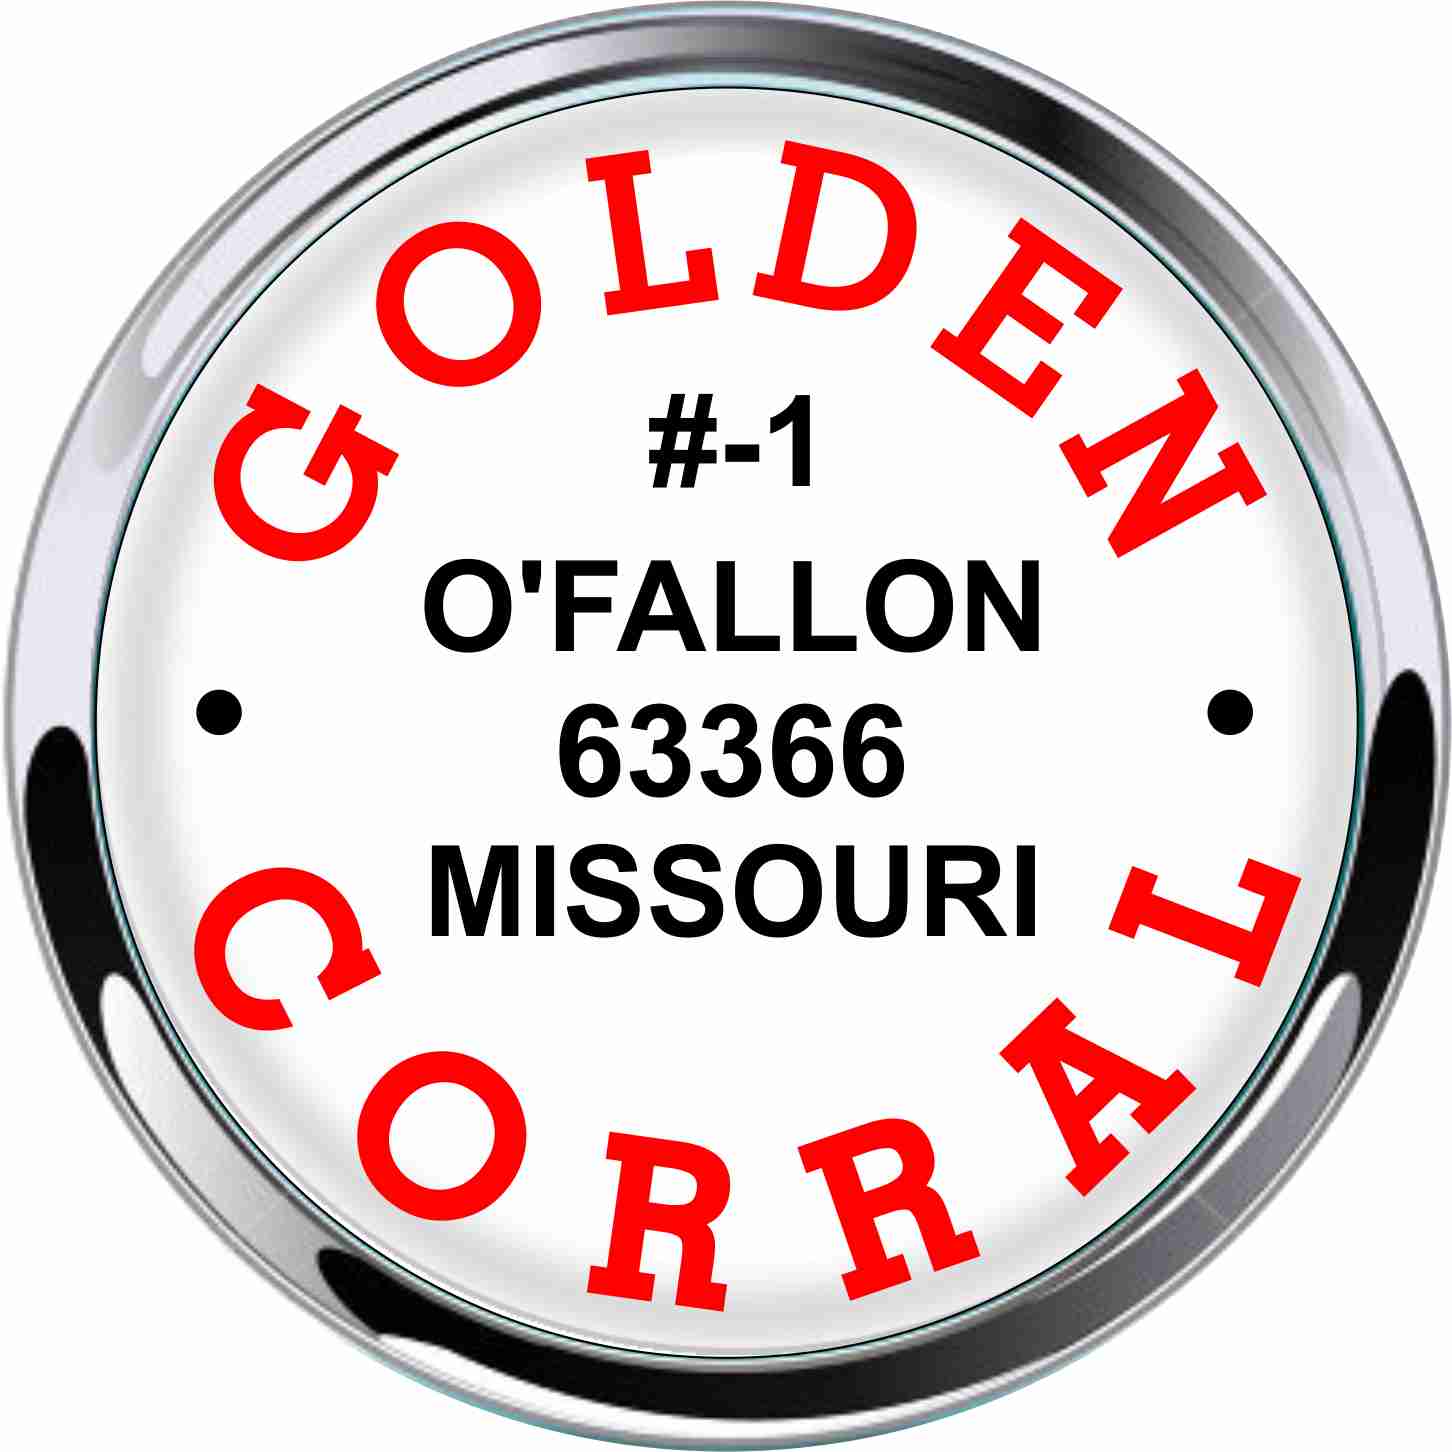 Golden Corral Car Emblems - 5 pcs